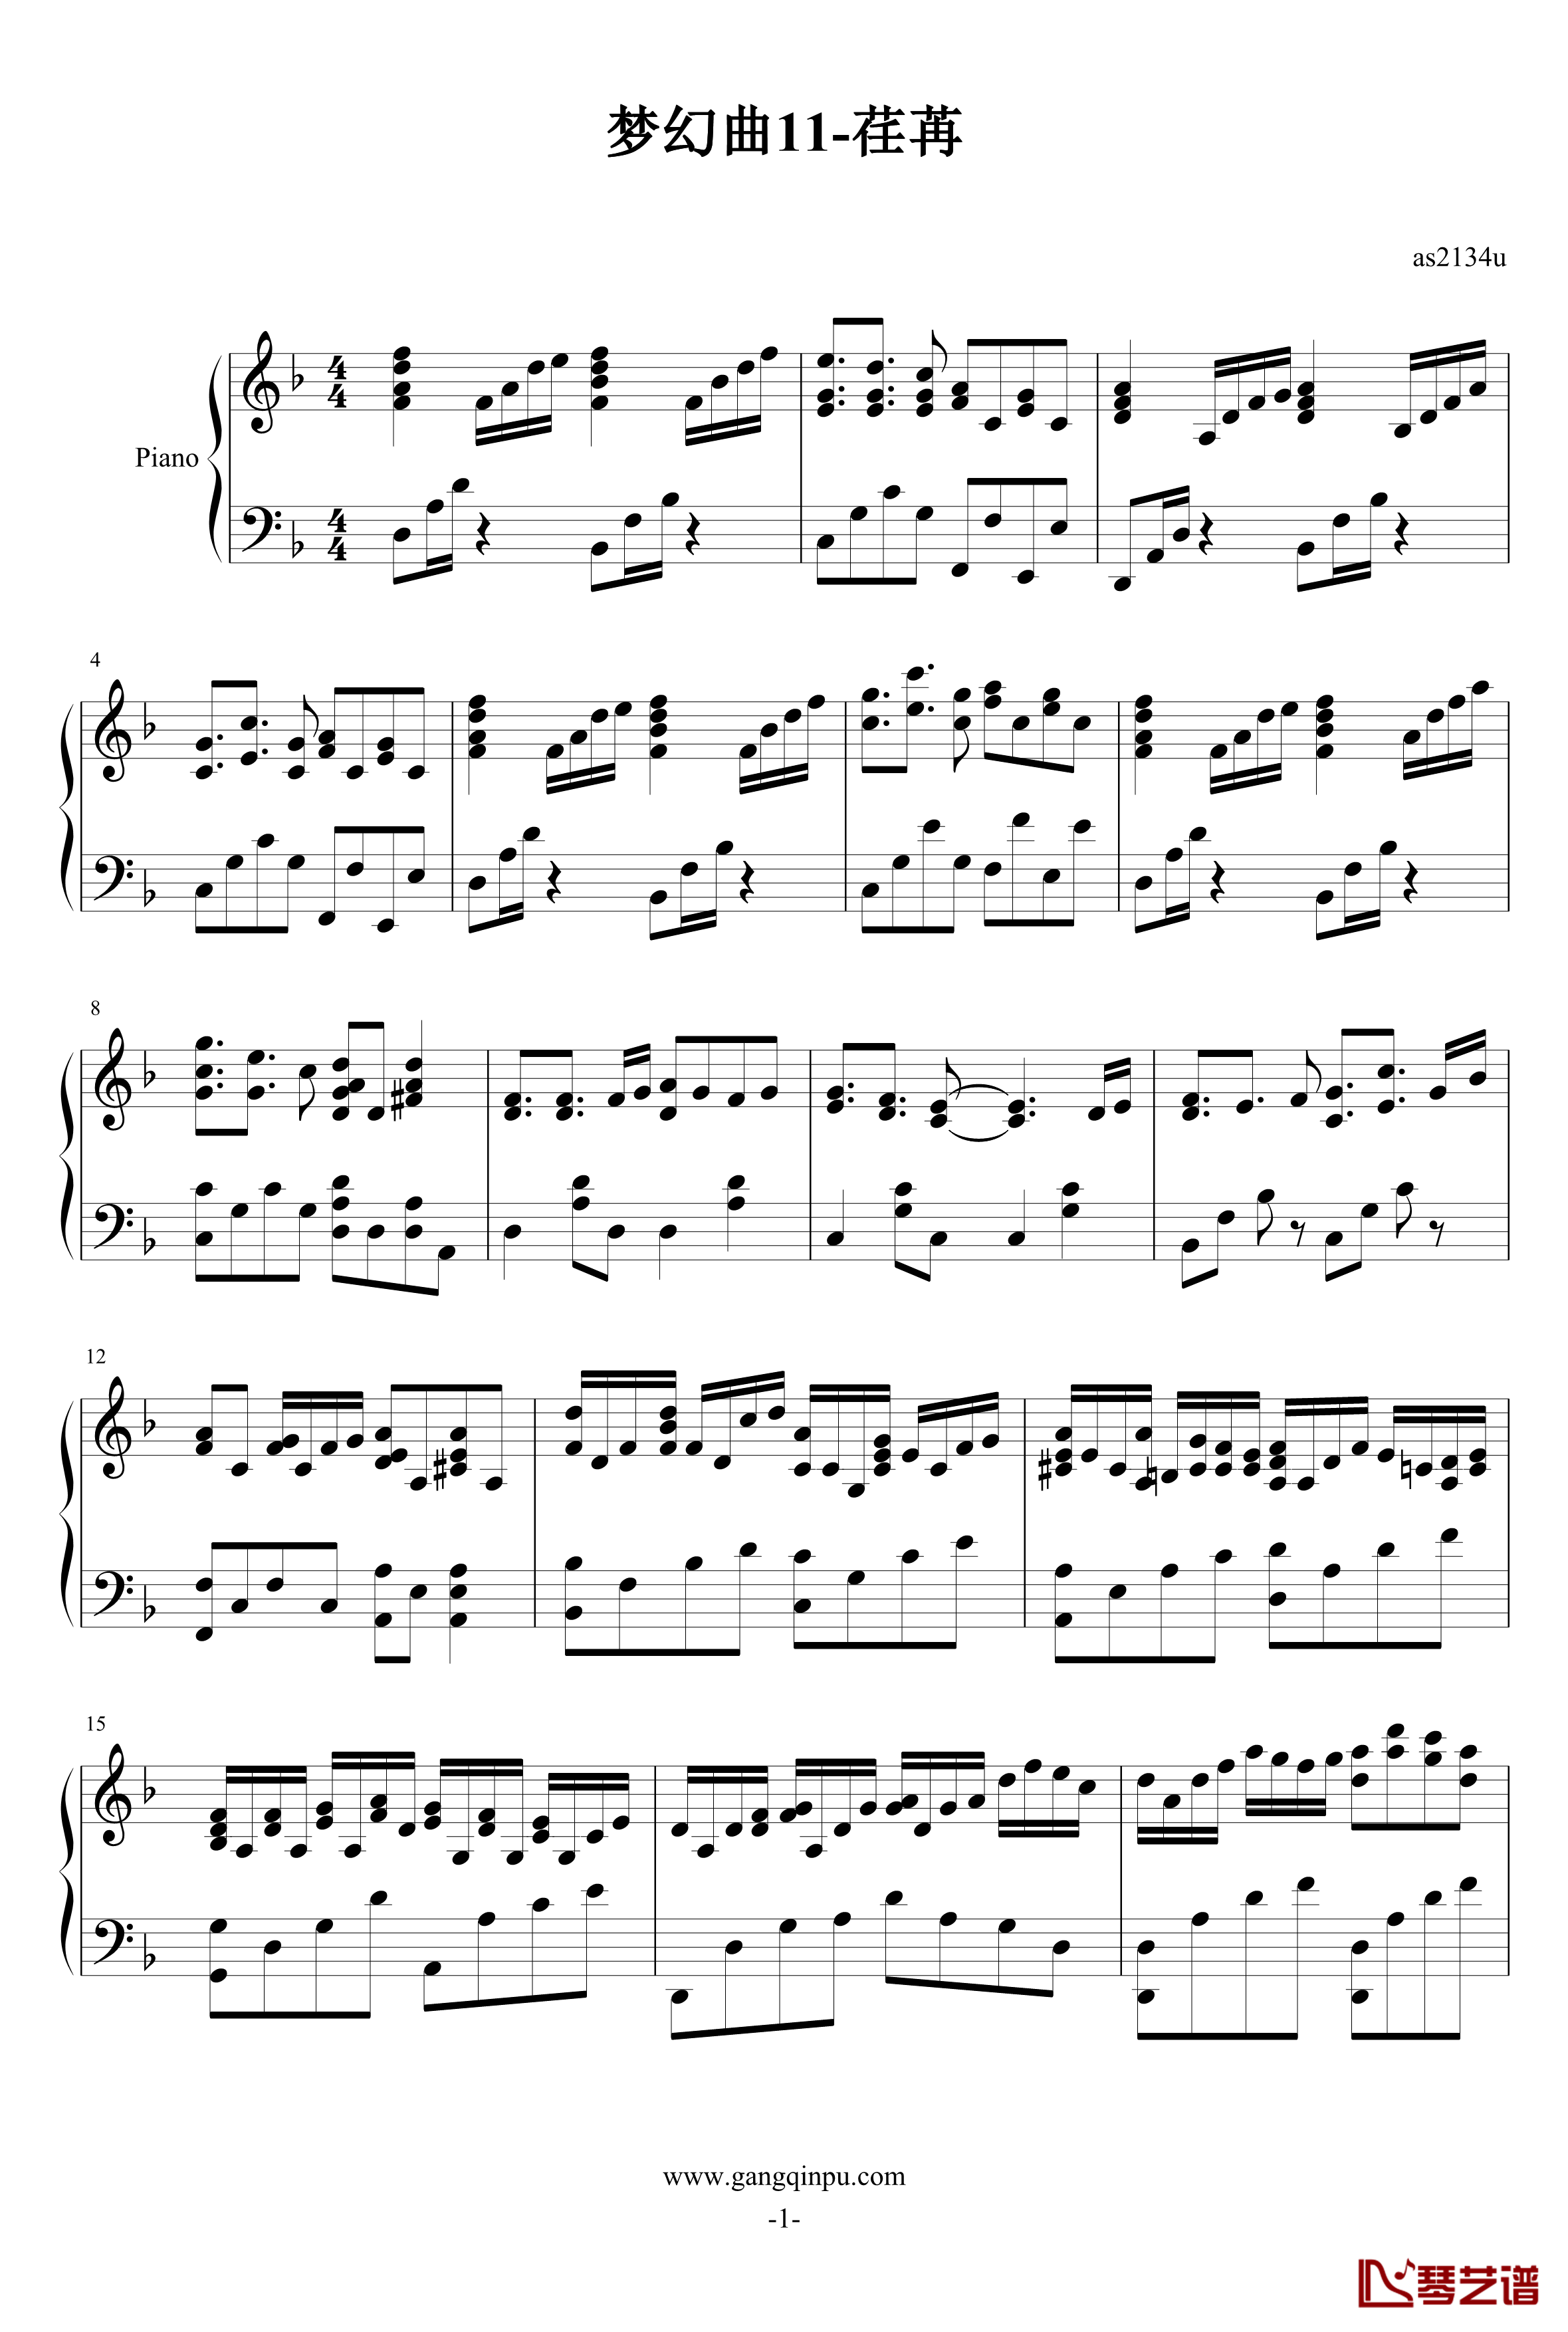 梦幻曲11荏苒钢琴谱-as2134